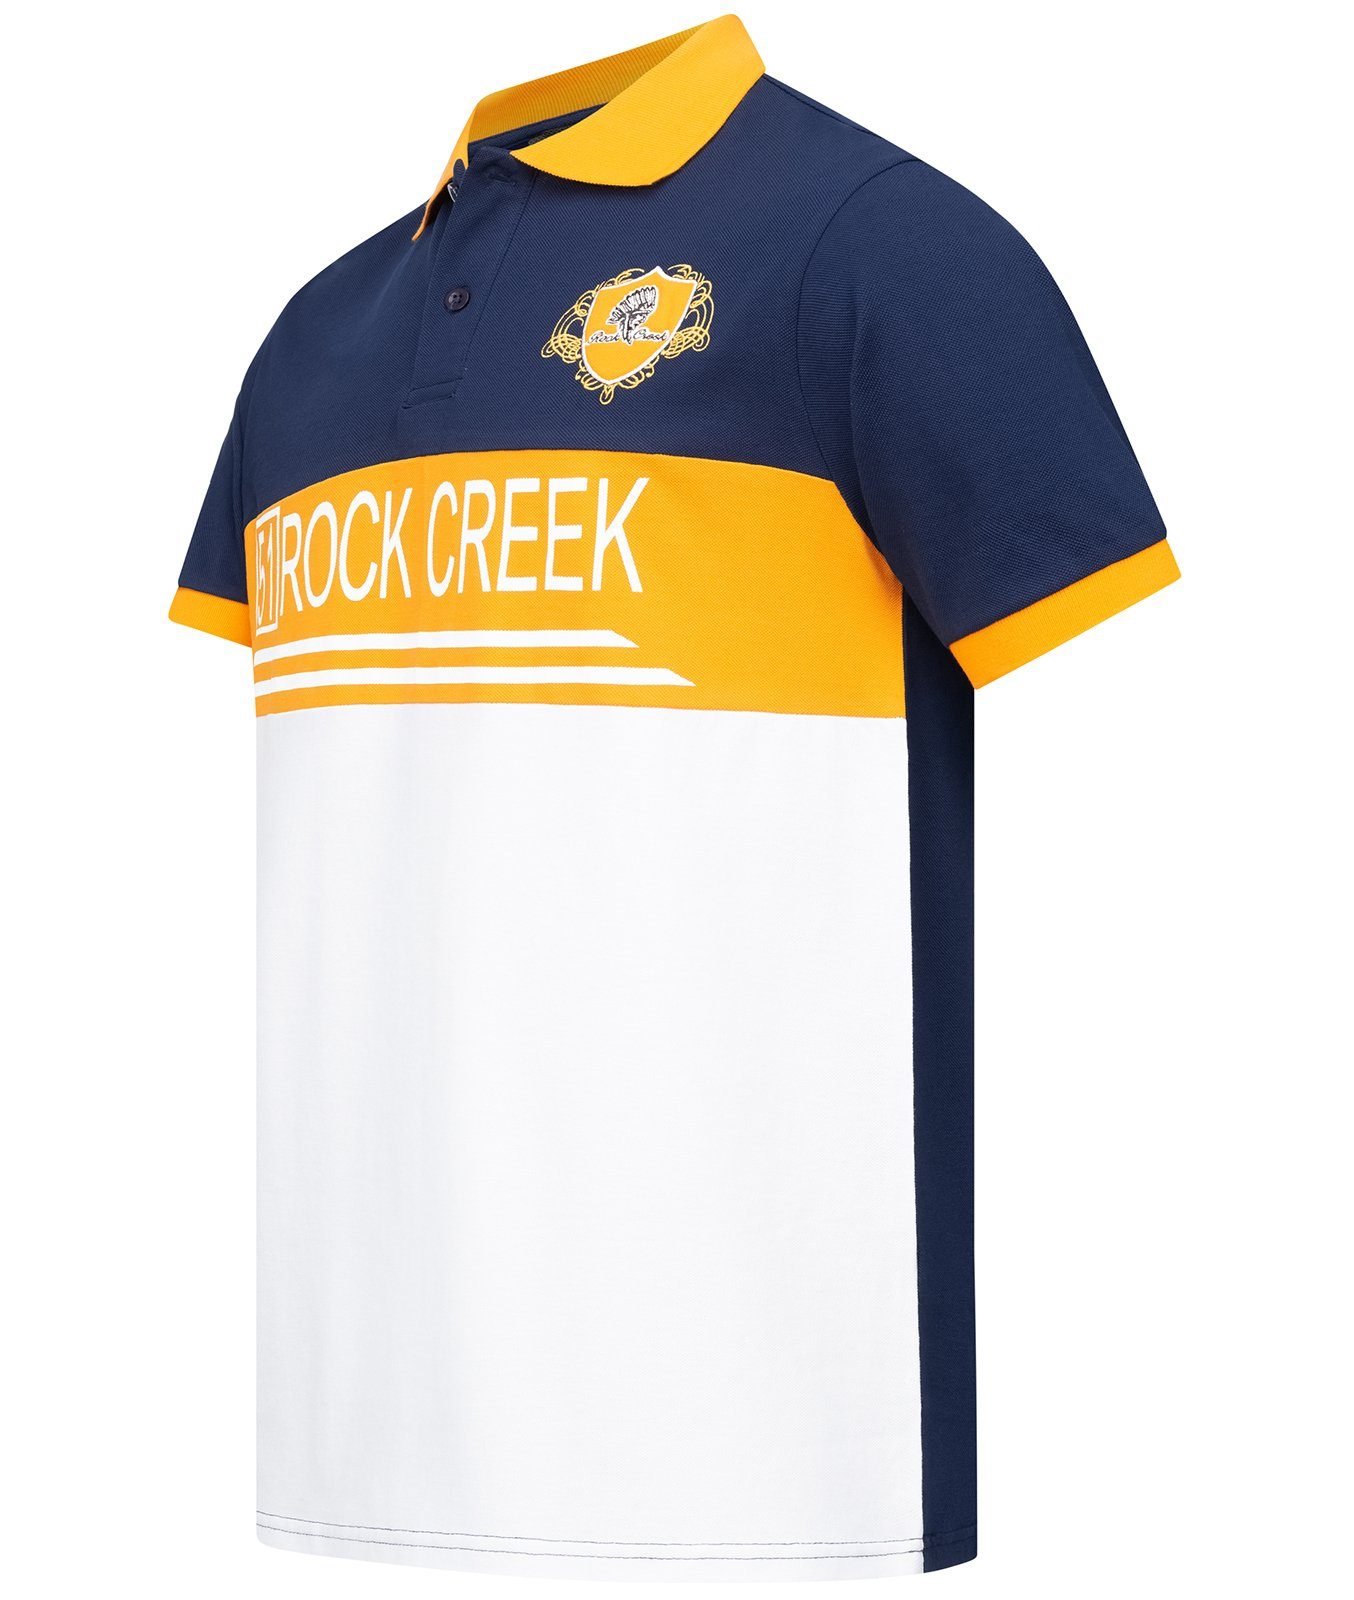 H-306 T-Shirt Herren Polokragen Creek mit Poloshirt Rock Navy